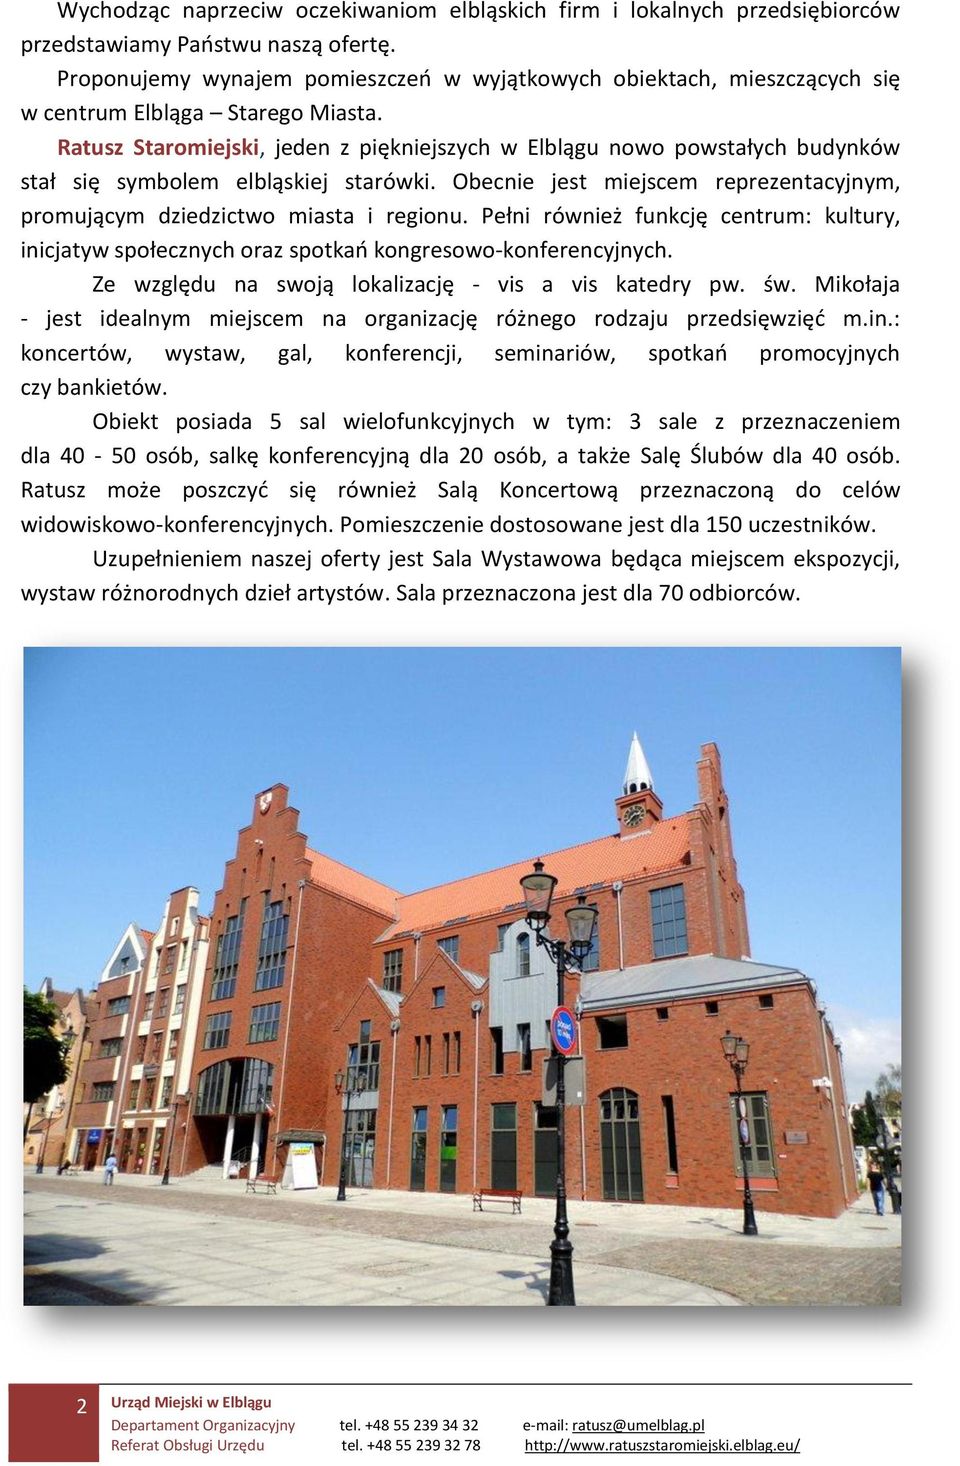 Ratusz Staromiejski, jeden z piękniejszych w Elblągu nowo powstałych budynków stał się symbolem elbląskiej starówki. Obecnie jest miejscem reprezentacyjnym, promującym dziedzictwo miasta i regionu.